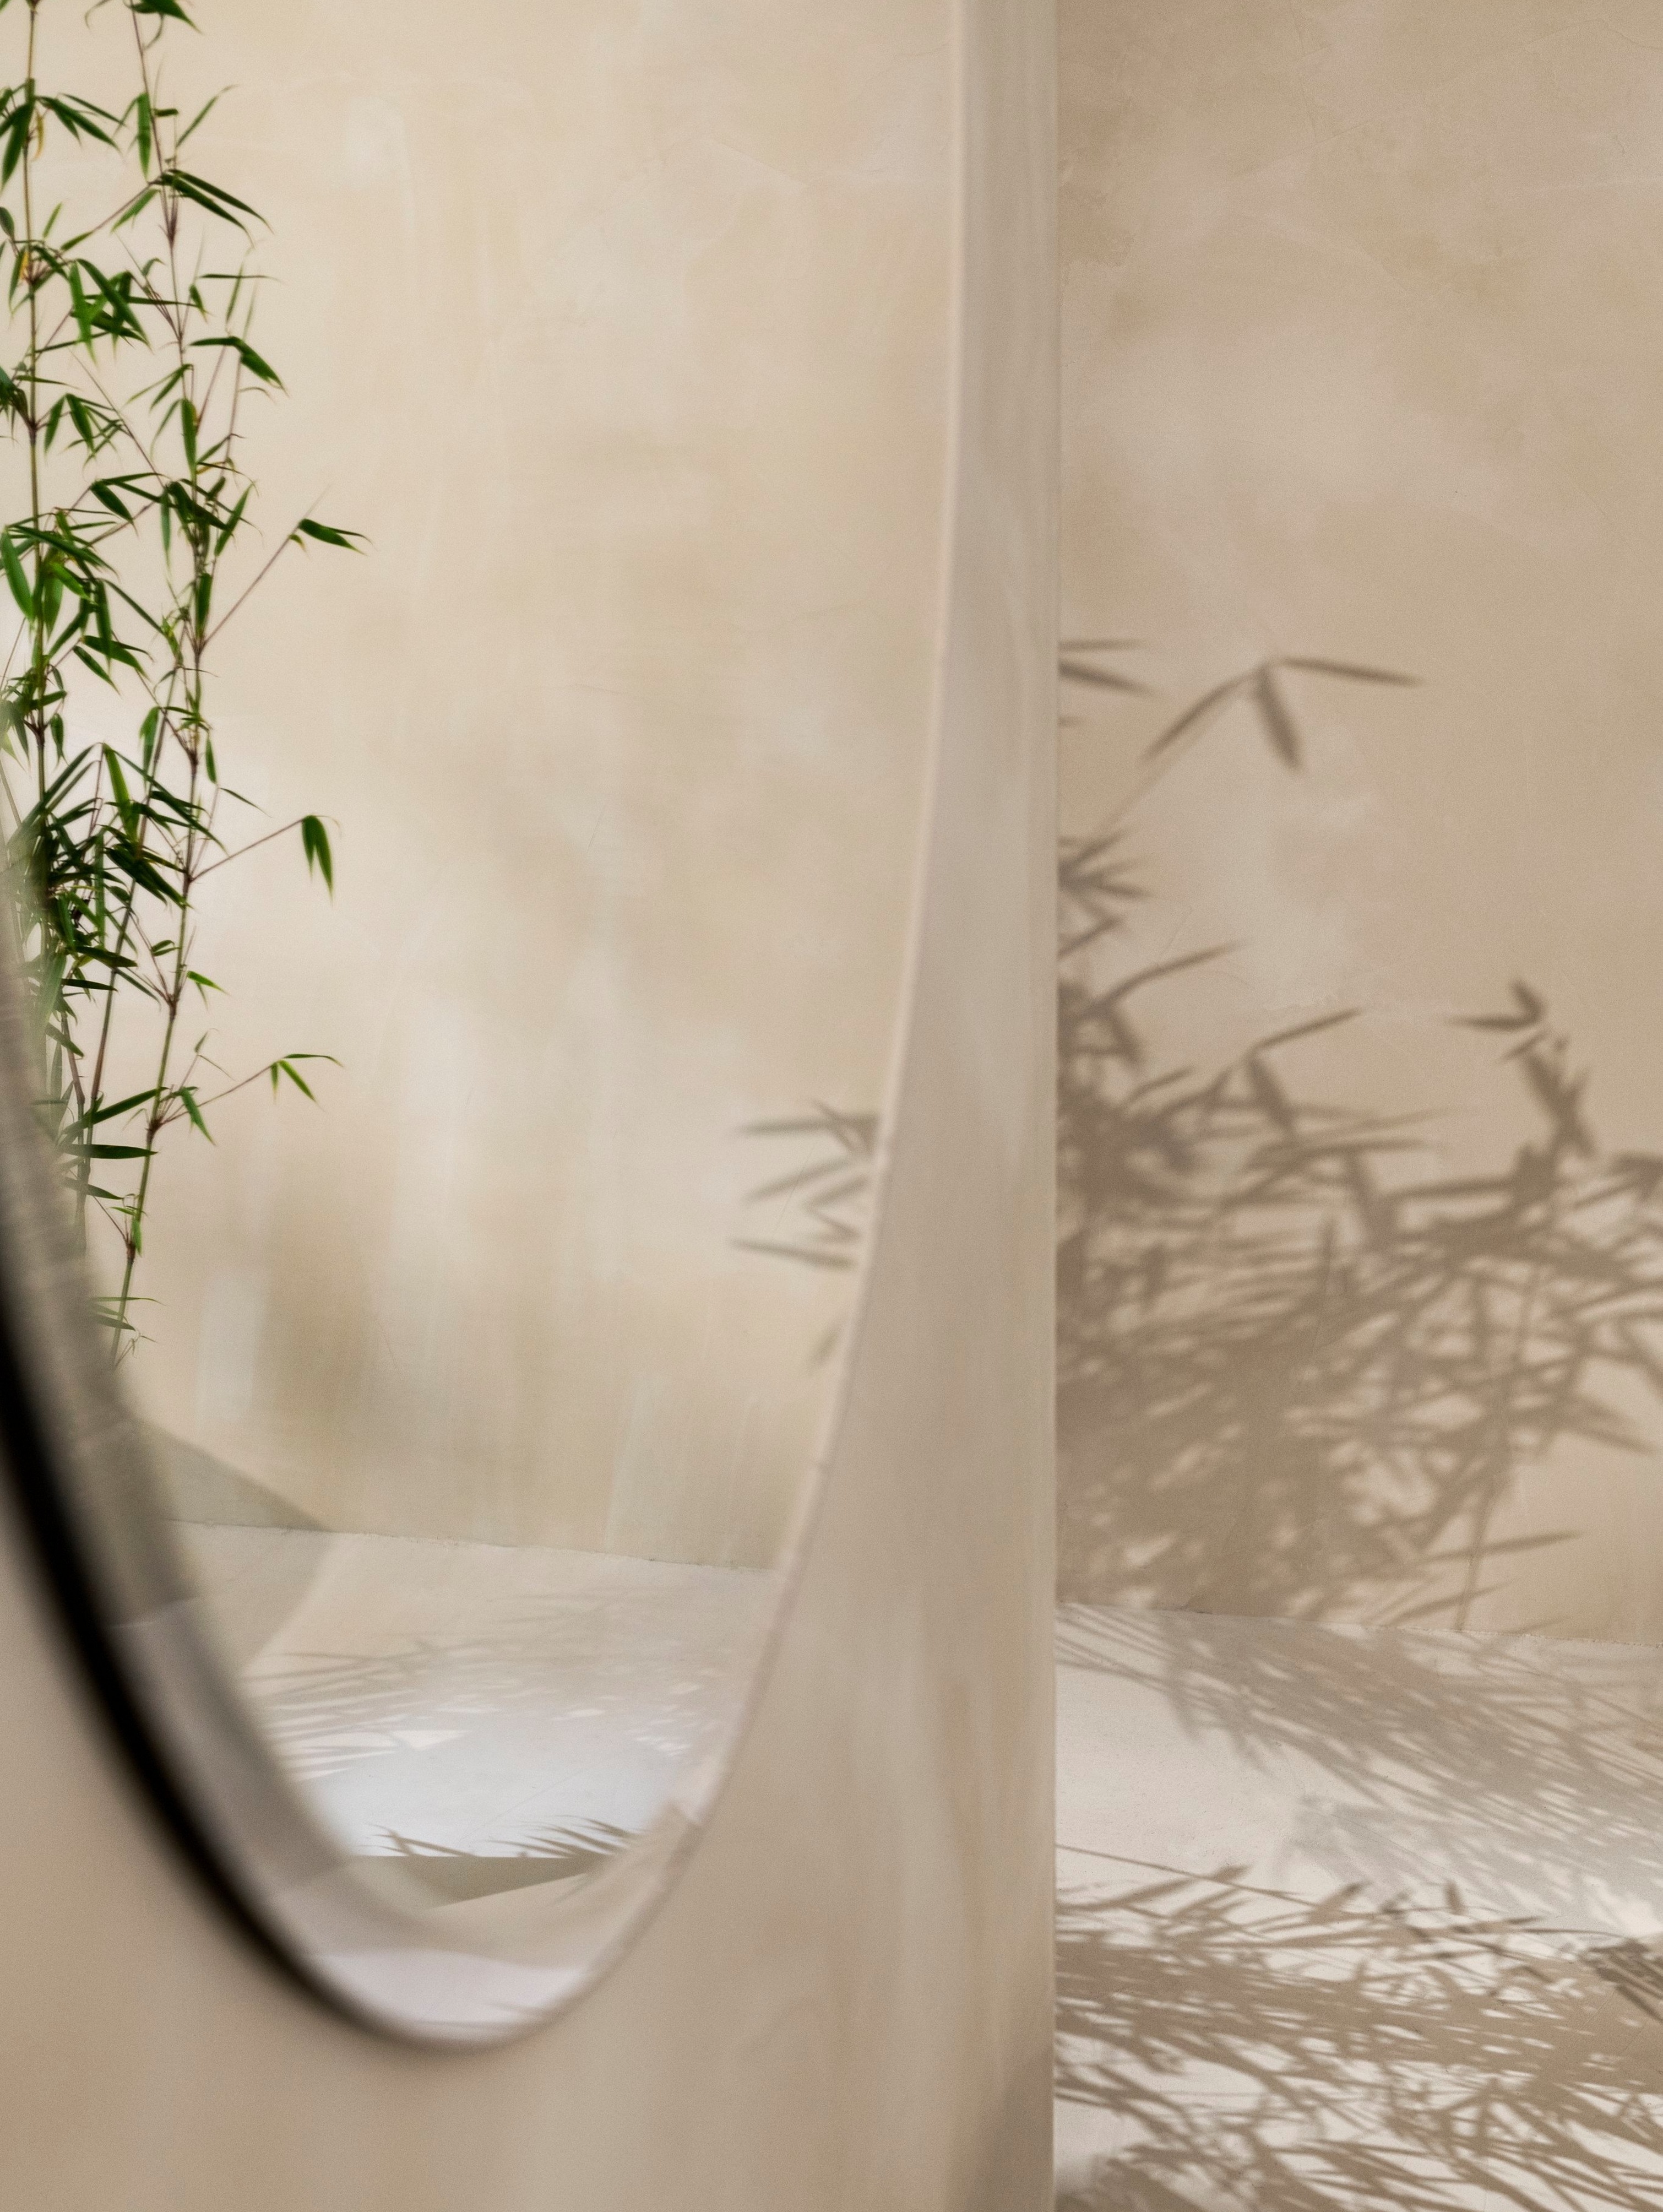 De ronde Tone-spiegel hangt aan de muur met een plant in spiegelbeeld.